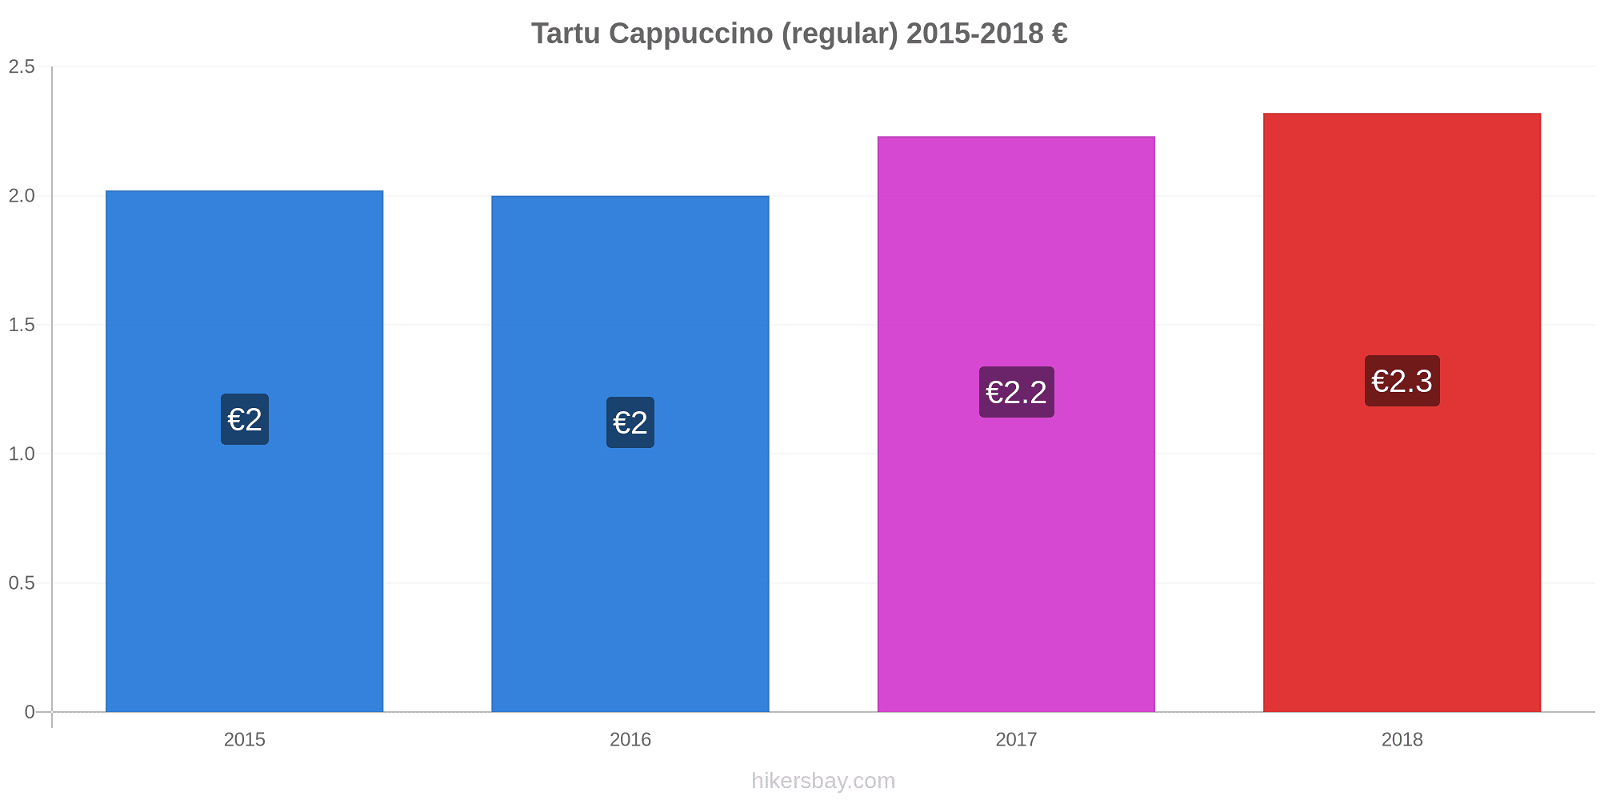 Tartu price changes Cappuccino (regular) hikersbay.com